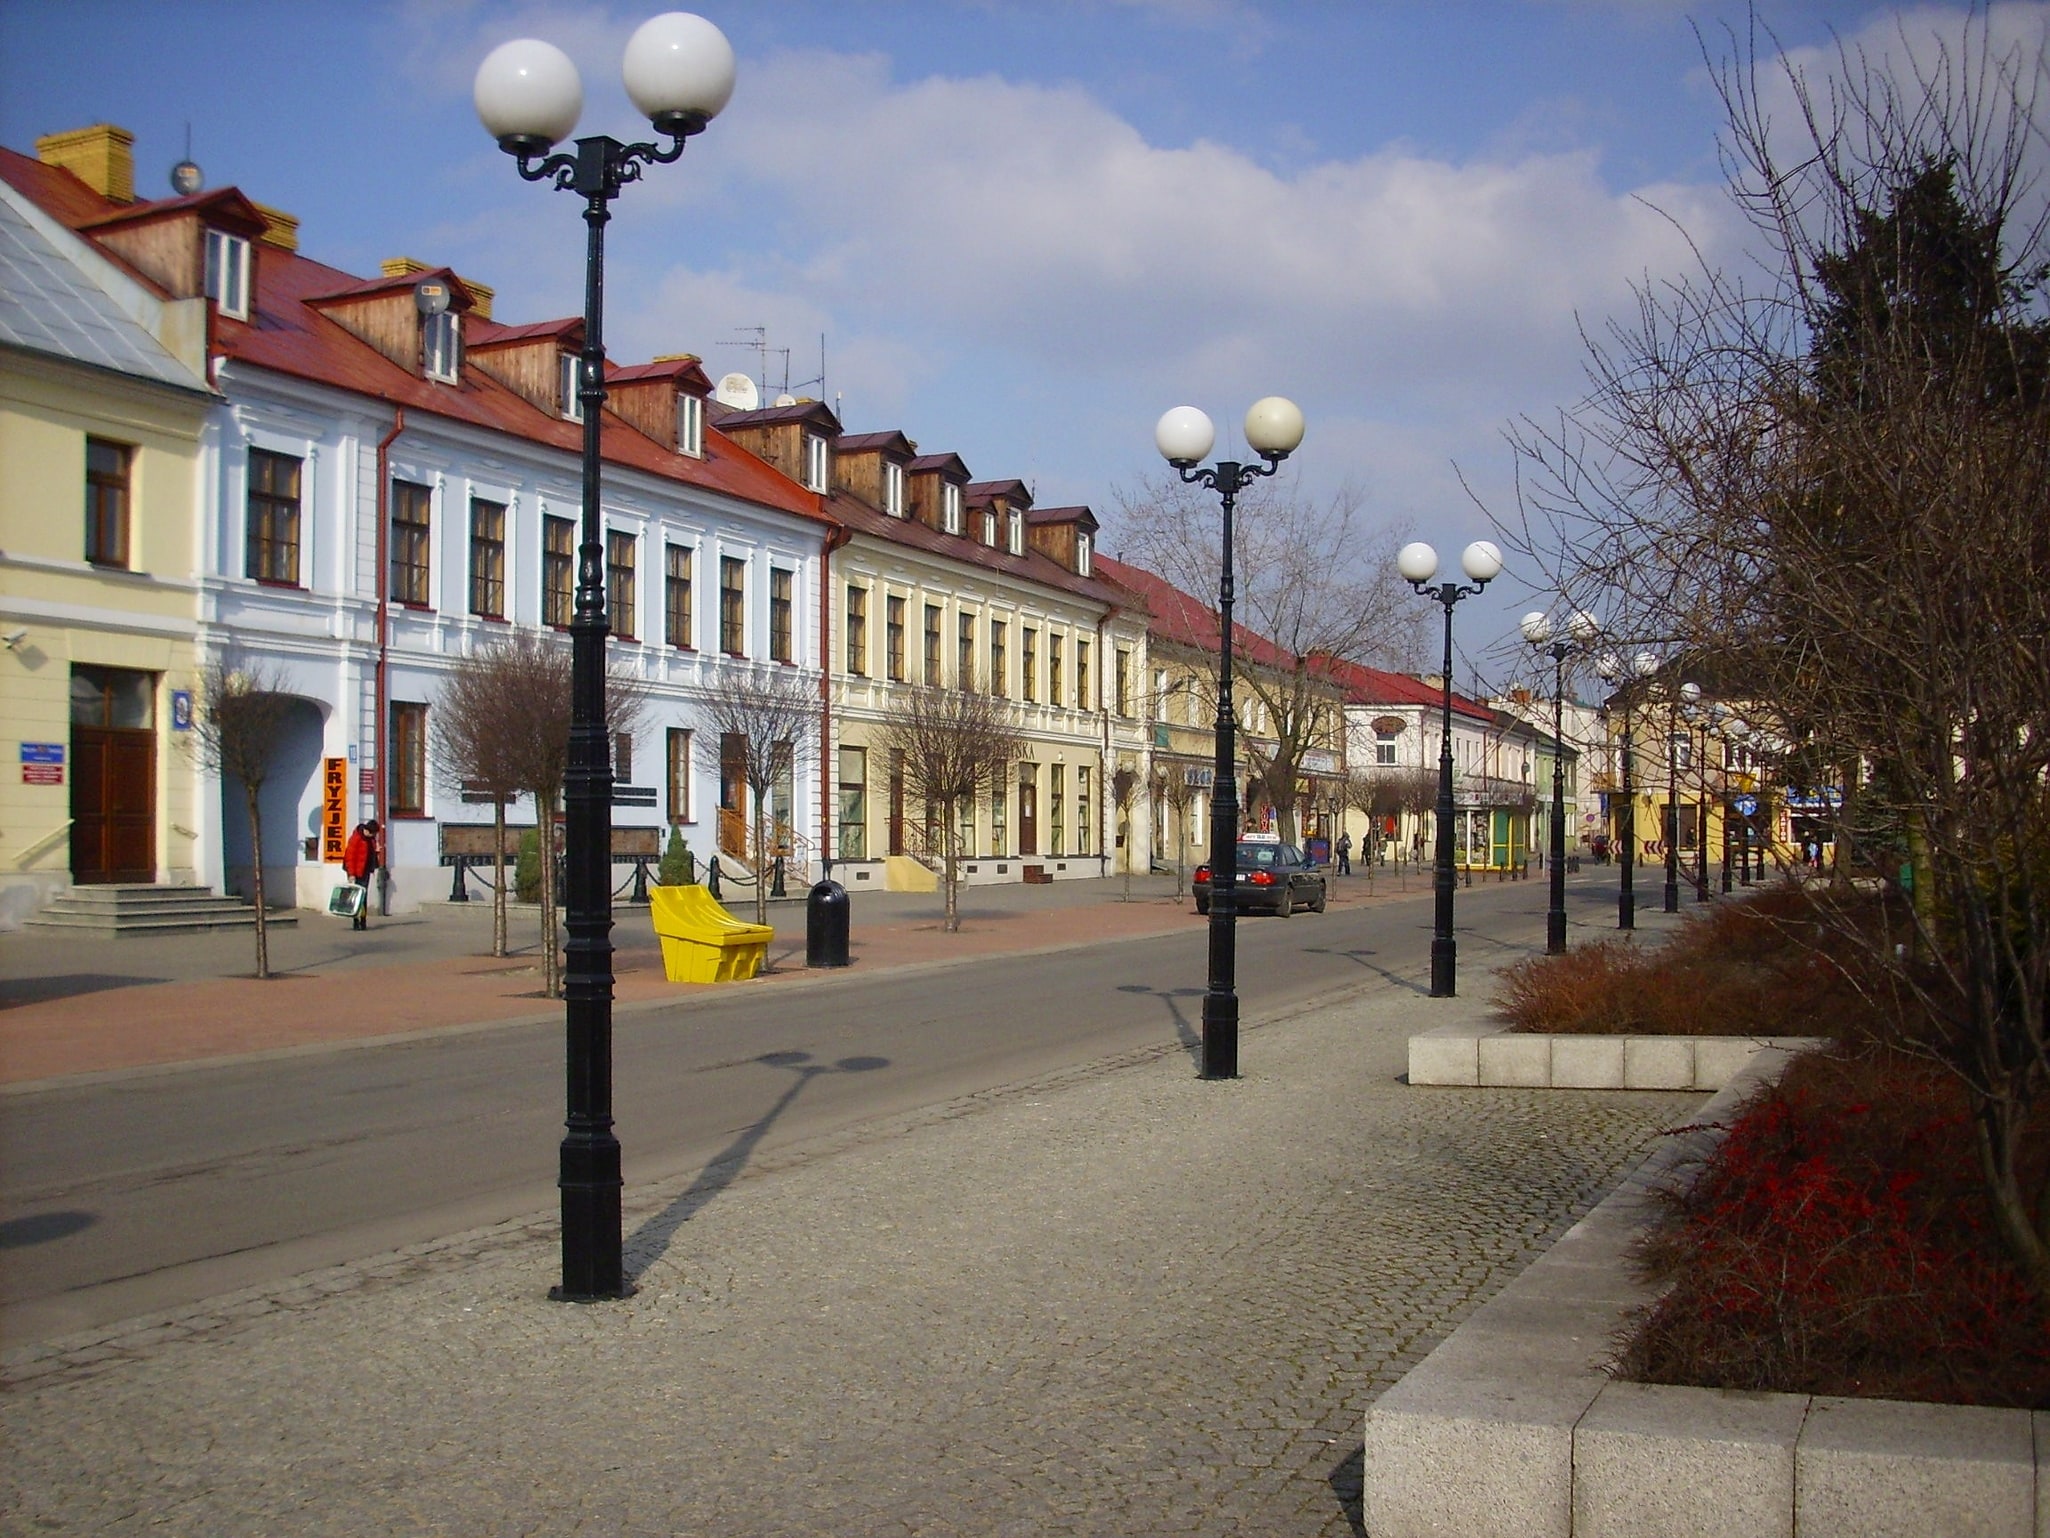 Biała Podlaska, Poland